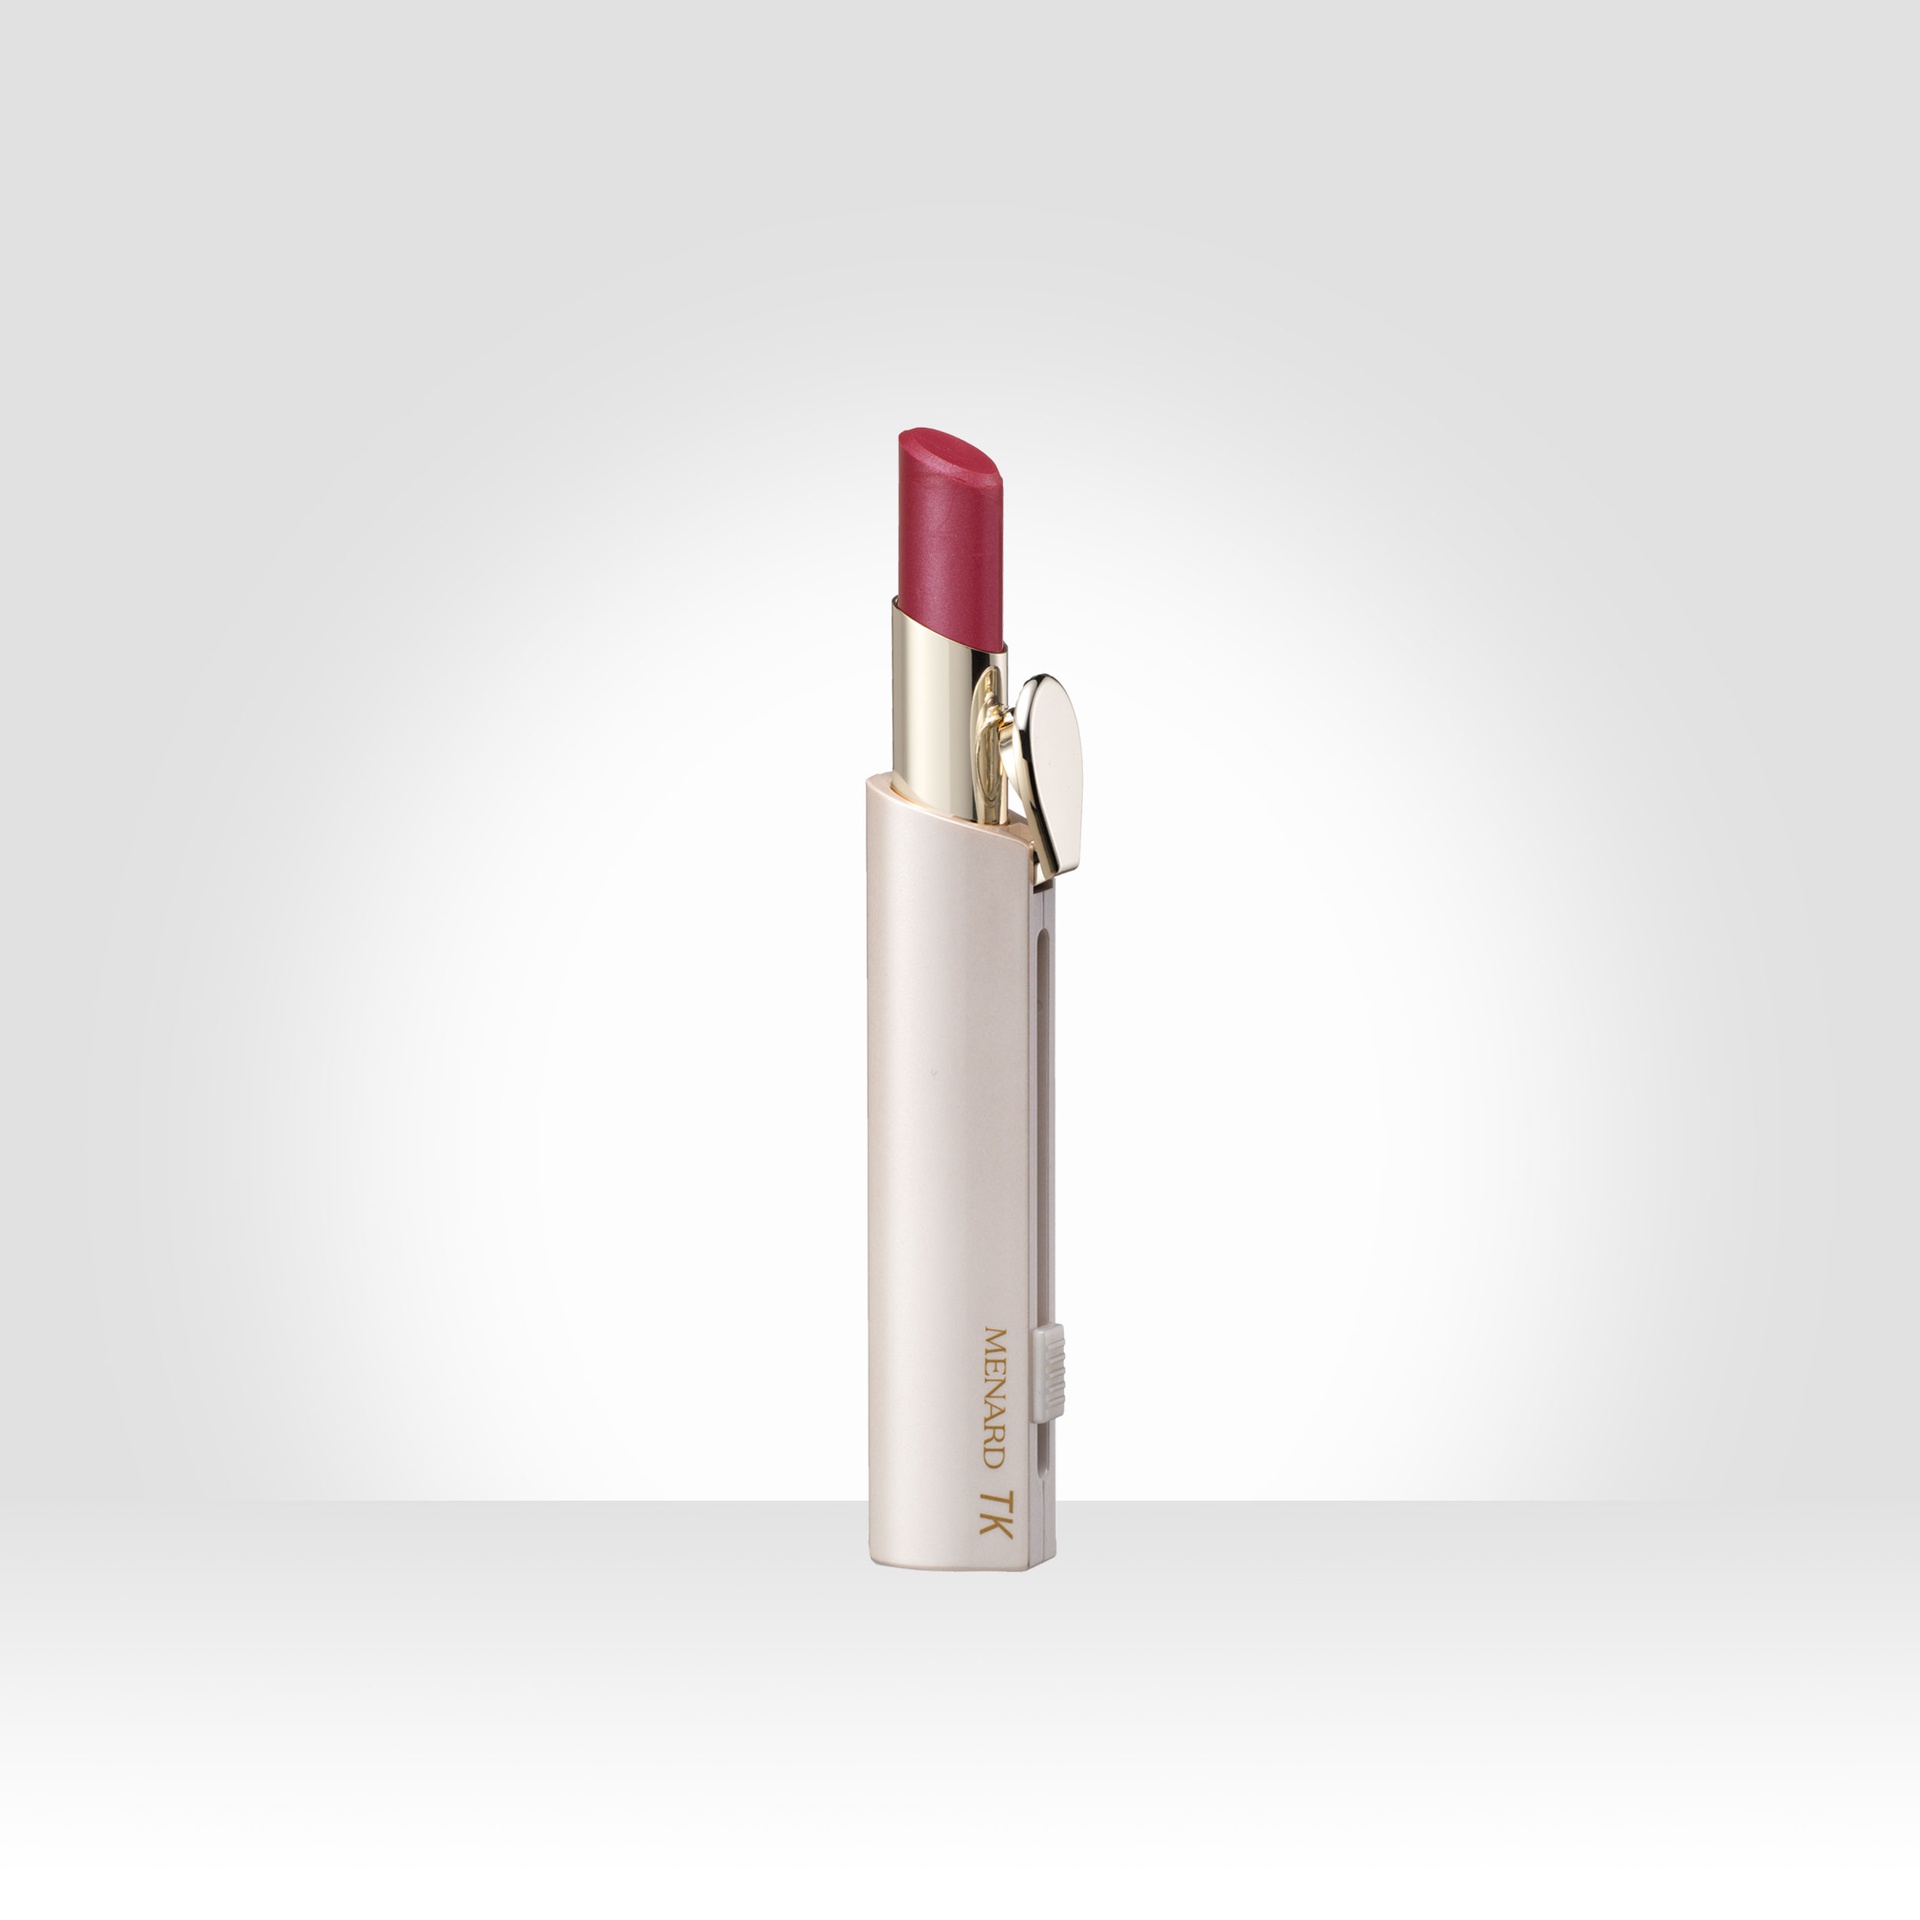 Menard - Son môi dạng thỏi TK Lip Stick A130 (màu đỏ hồng)